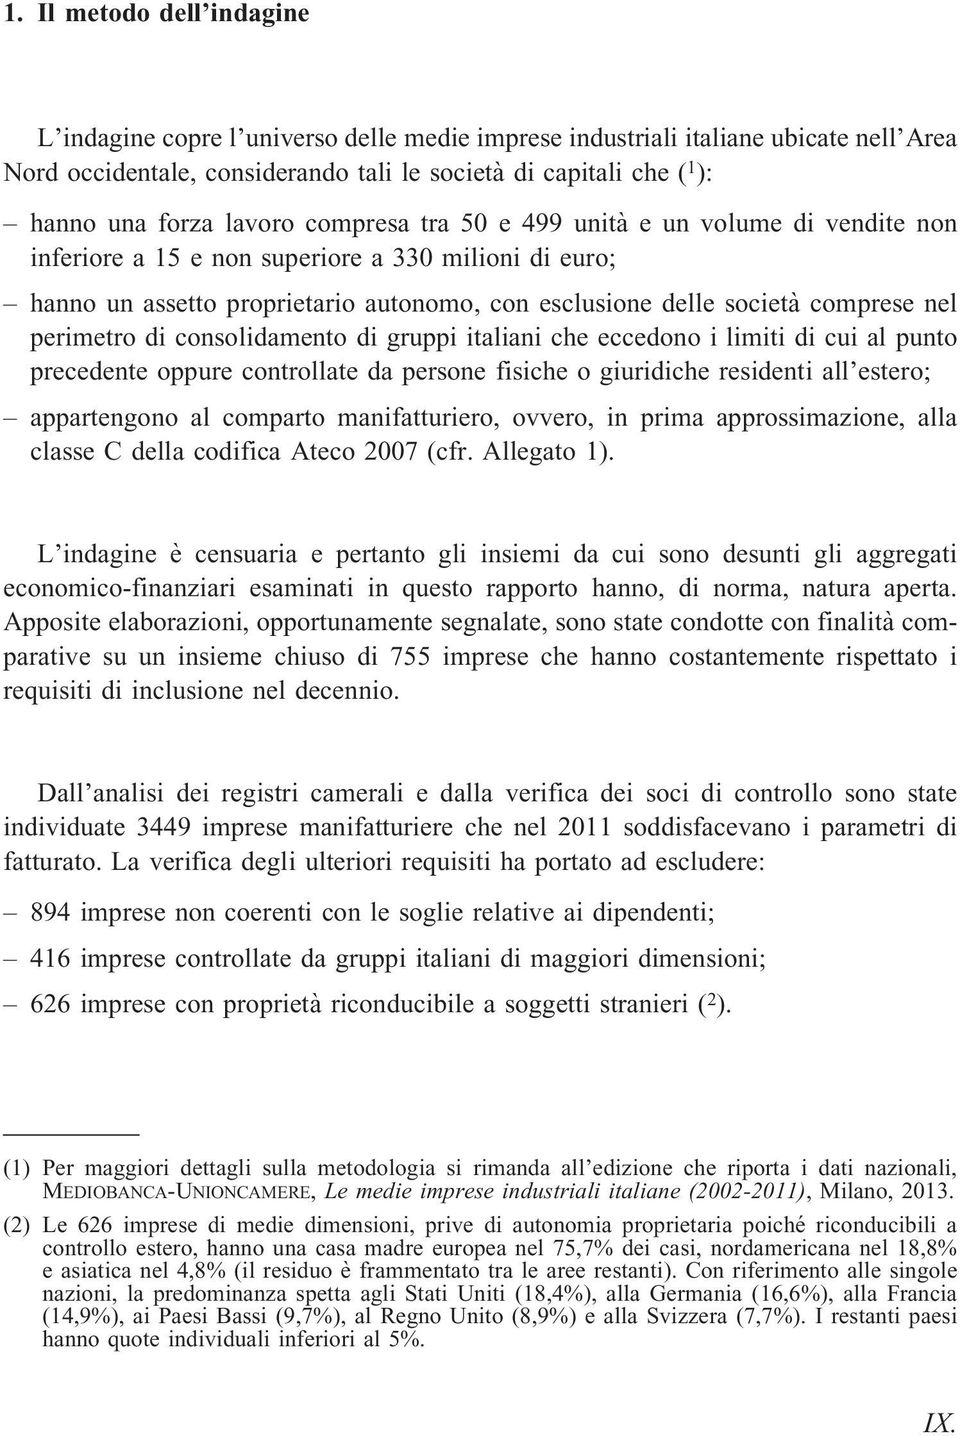 perimetro di consolidamento di gruppi italiani che eccedono i limiti di cui al punto precedente oppure controllate da persone fisiche o giuridiche residenti all estero; appartengono al comparto